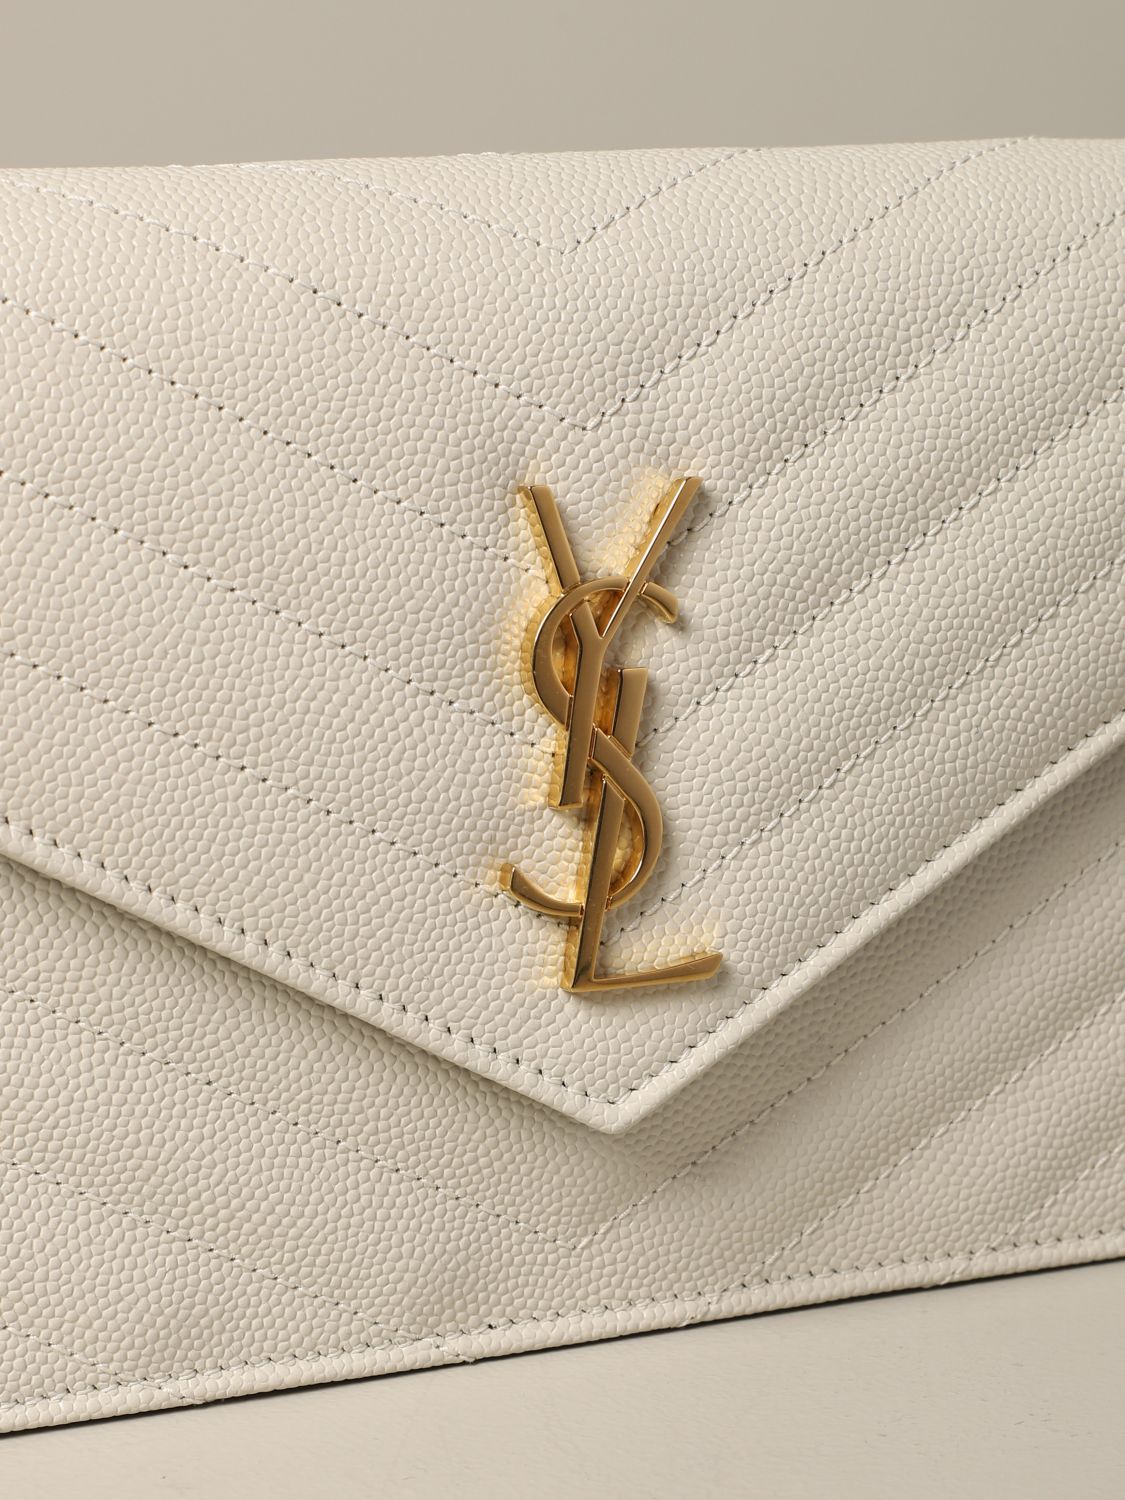 Mini sac à main Saint Laurent: Sac Monogram envelope chain wallet Saint Laurent en cuir grain de poudre jaune crème 3